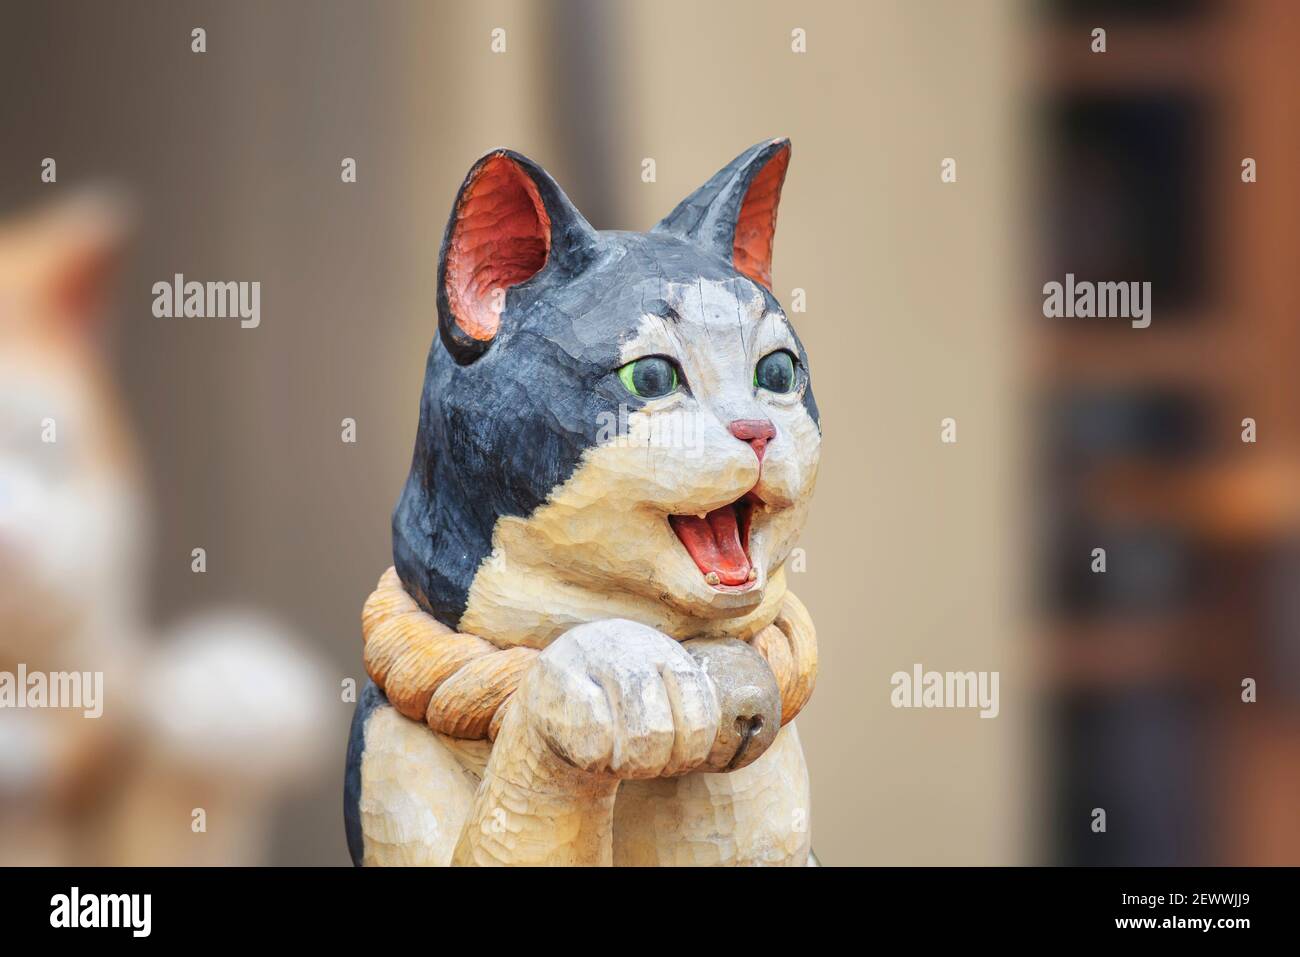 Monumental Melancolía Patentar tokio, japón - febrero 28 2021: Cerca de una escultura de madera que  representa un lindo gato japonés maneki-neko con la boca abierta y una pata  levantada en un ser Fotografía de